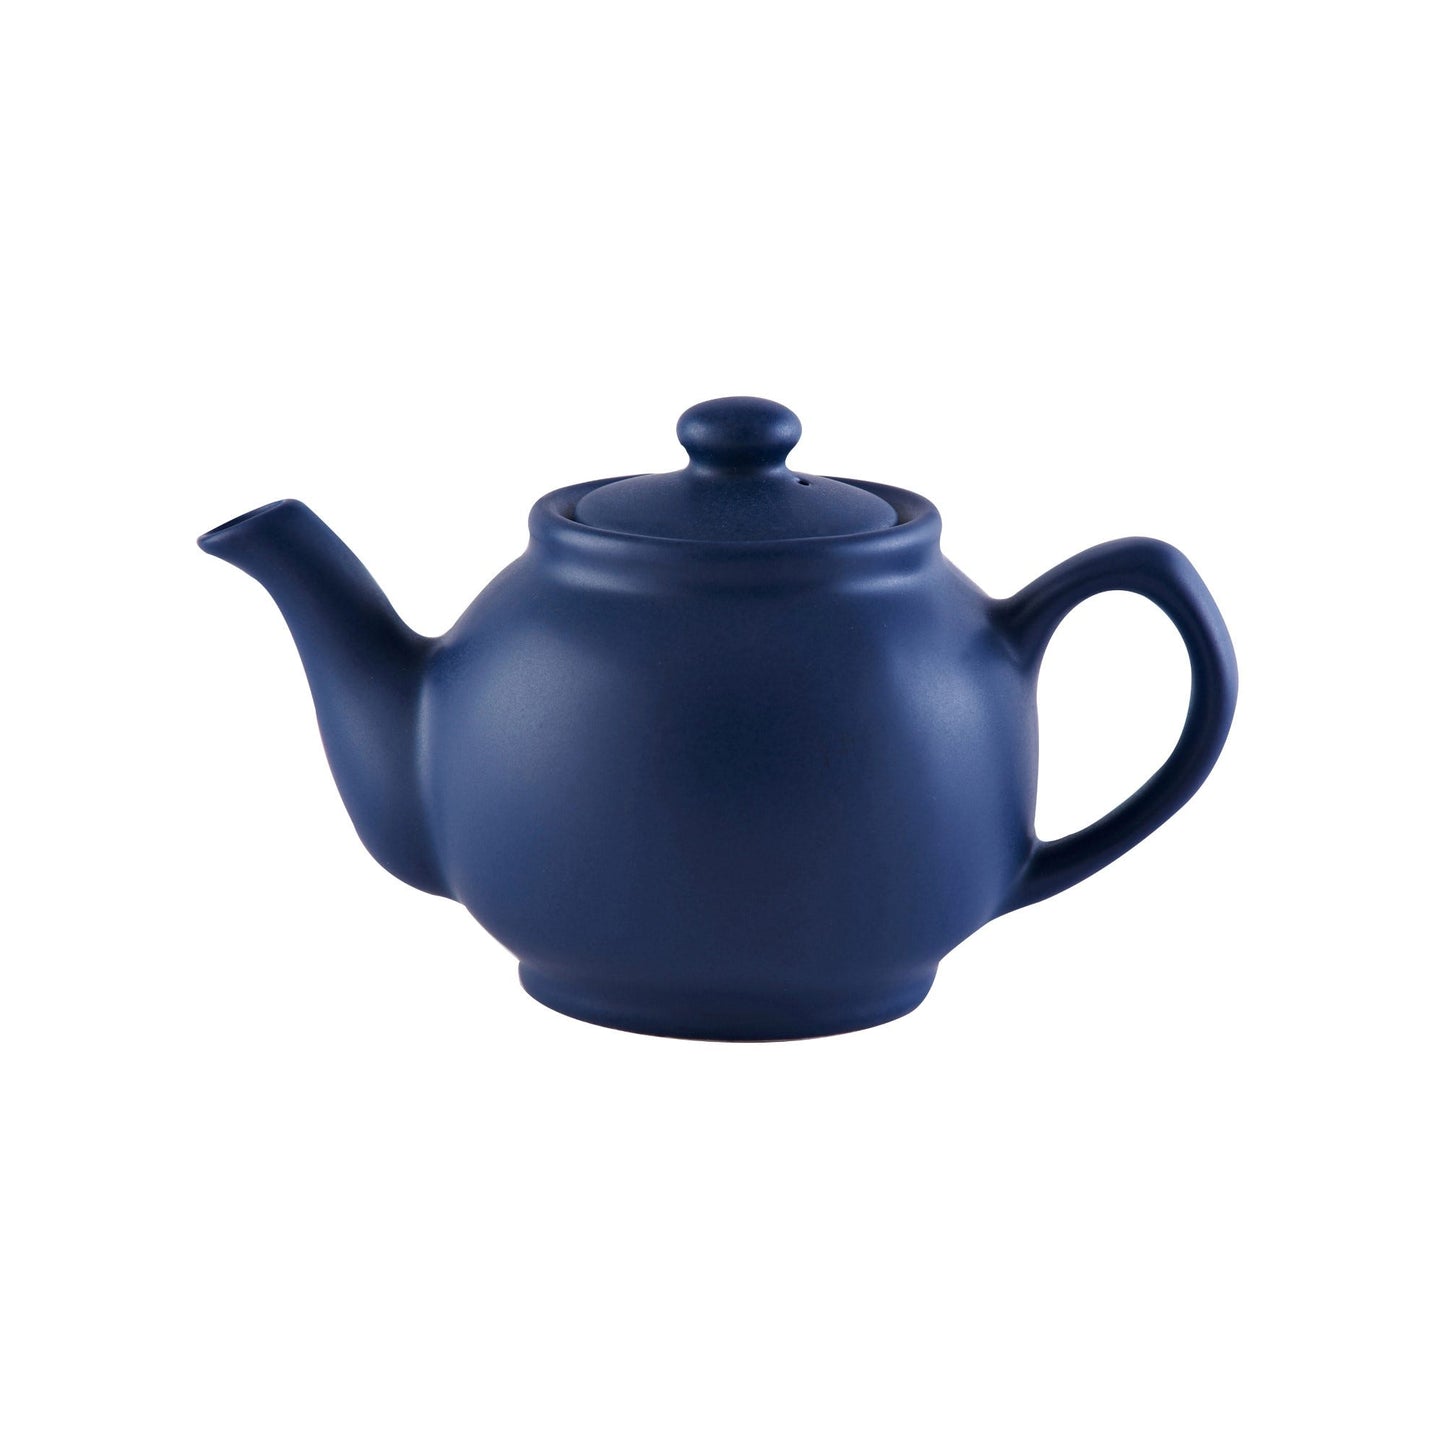 Matt Navy Blue 2cup Teapot